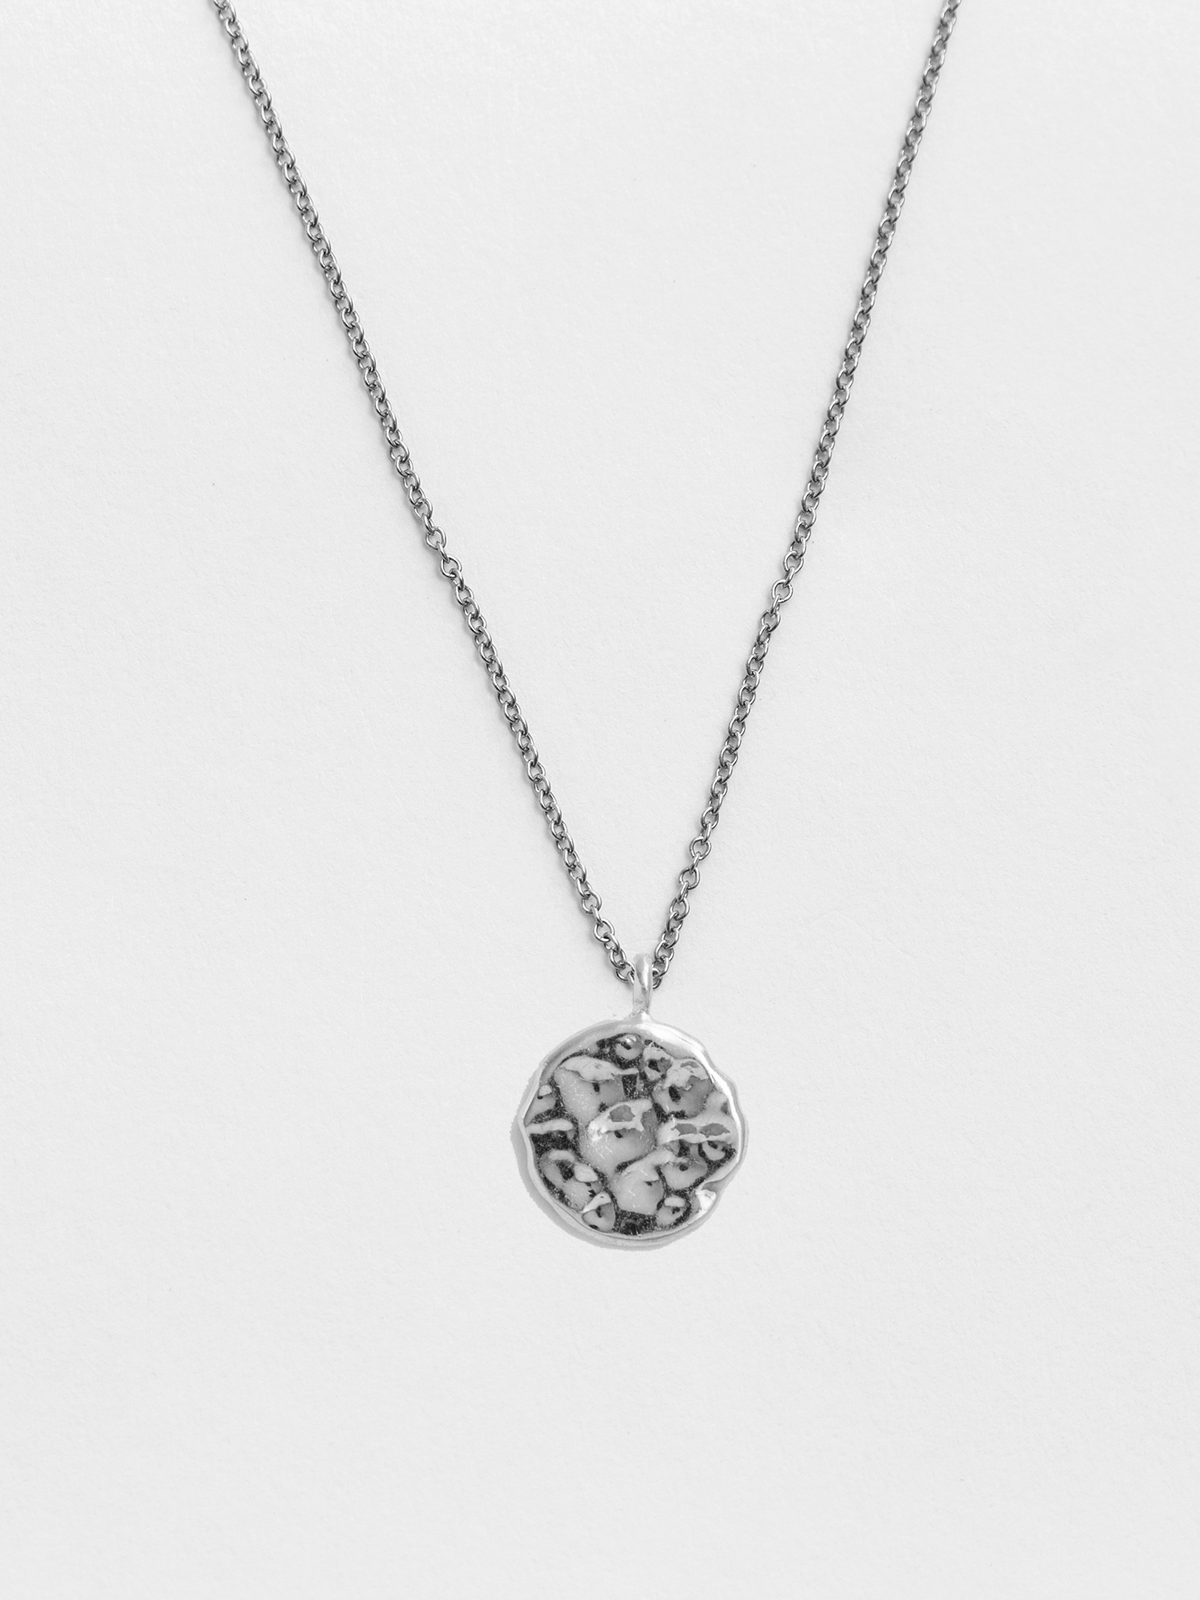 Danielle Small Silver Pendant Necklace